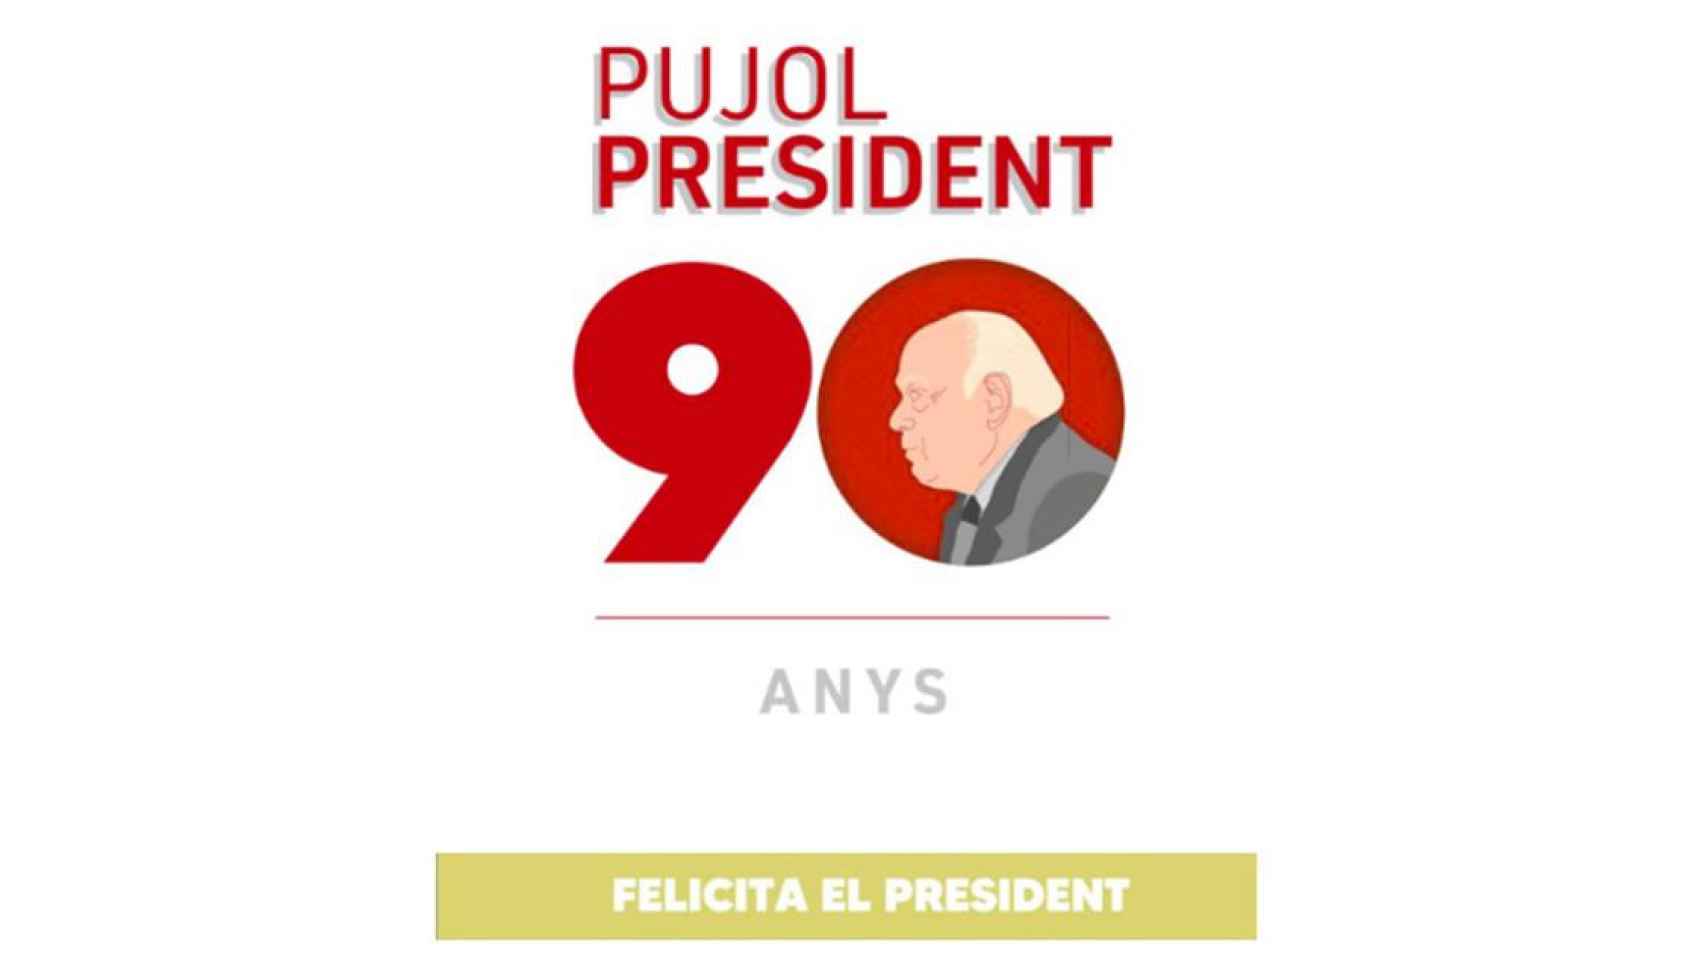 Imagen de la página web que permite felicitar a Jordi Pujol por su 90 cumpleaños / CG